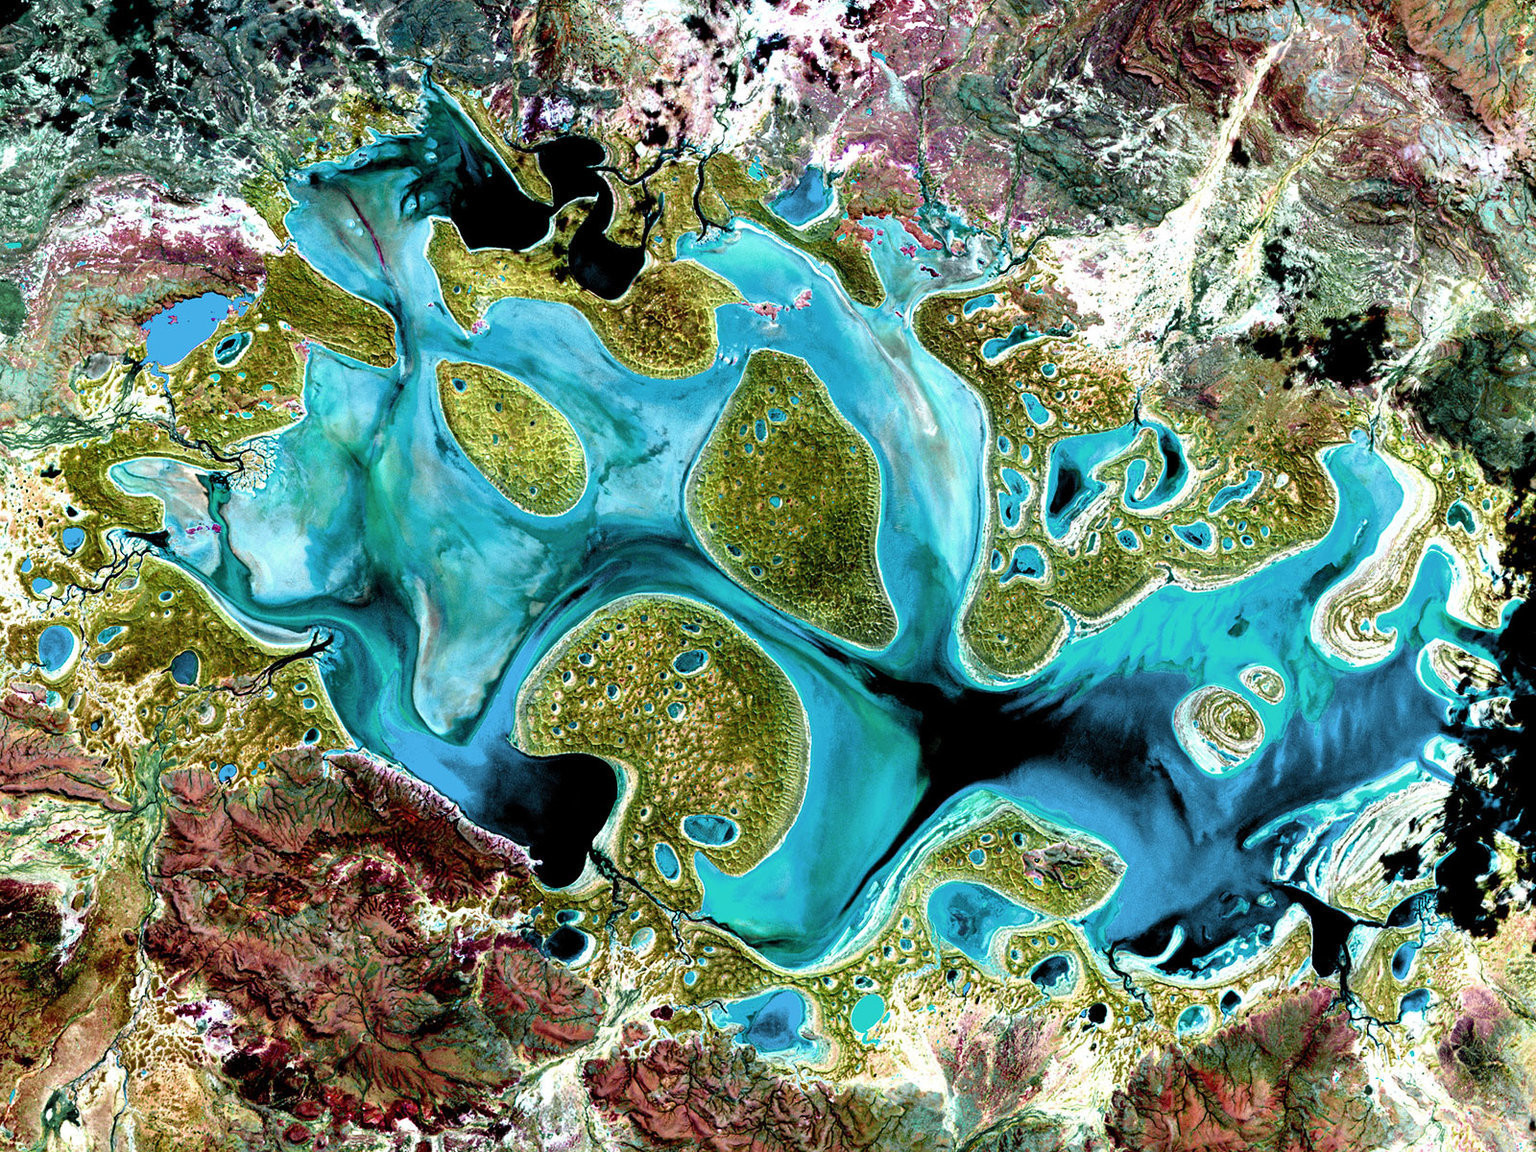 Озеро Карнеги в Австралии. Оно наполняется водой только в периоды значительных осадков. В сухие периоды от него остается лишь грязное болото. Фотография 1999 года.